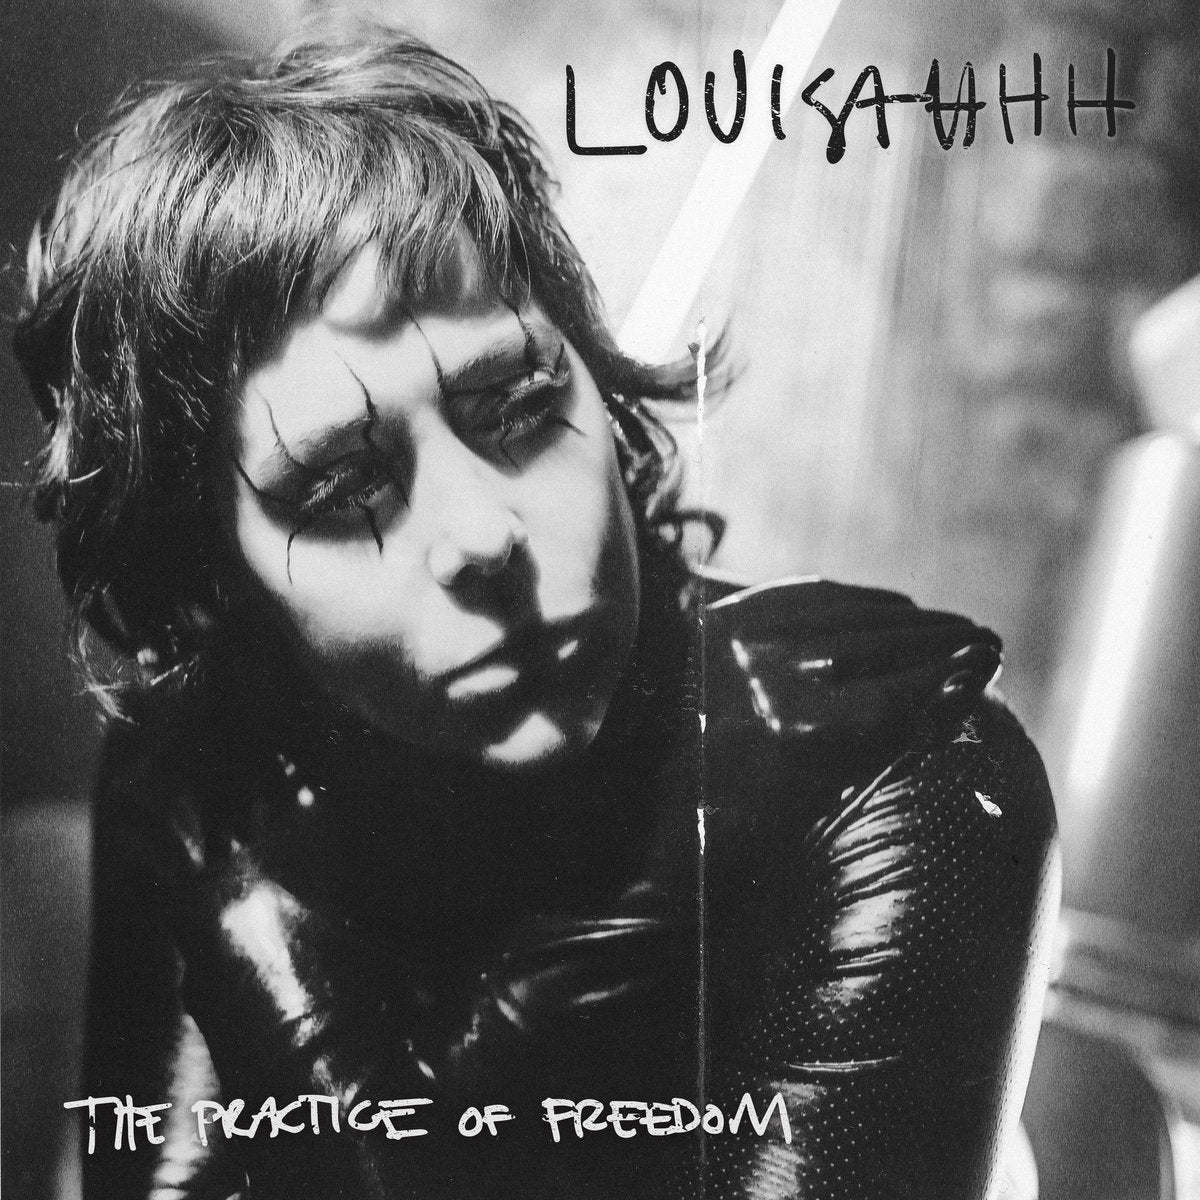 LOUISAHHH - The Practice of Freedom - 2LP - Vinyl